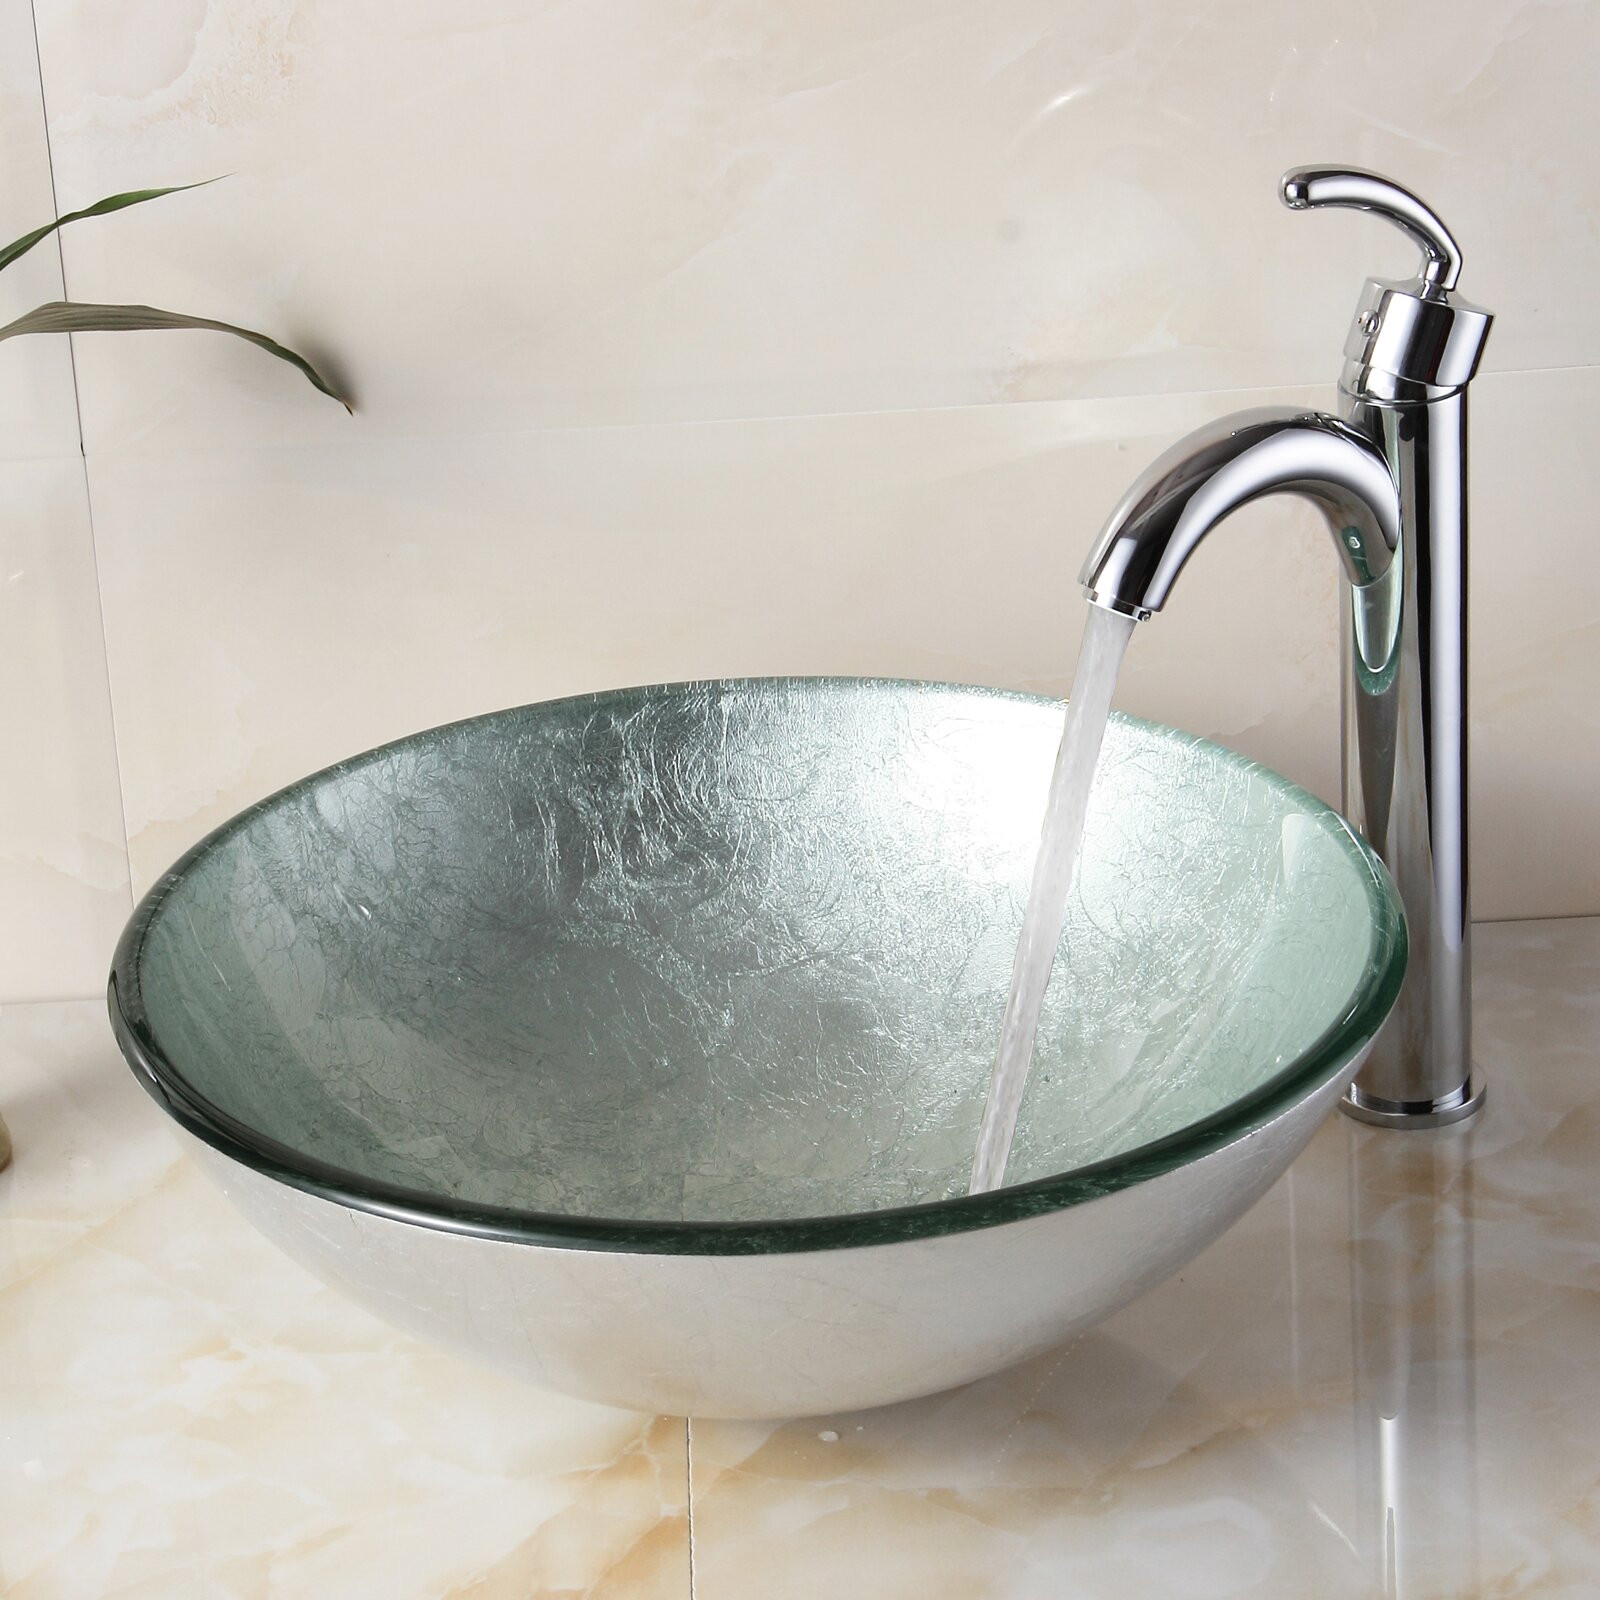 Sink Bowls For Bathroom
 Elite Hand Painted Foil Round Bowl Vessel Bathroom Sink